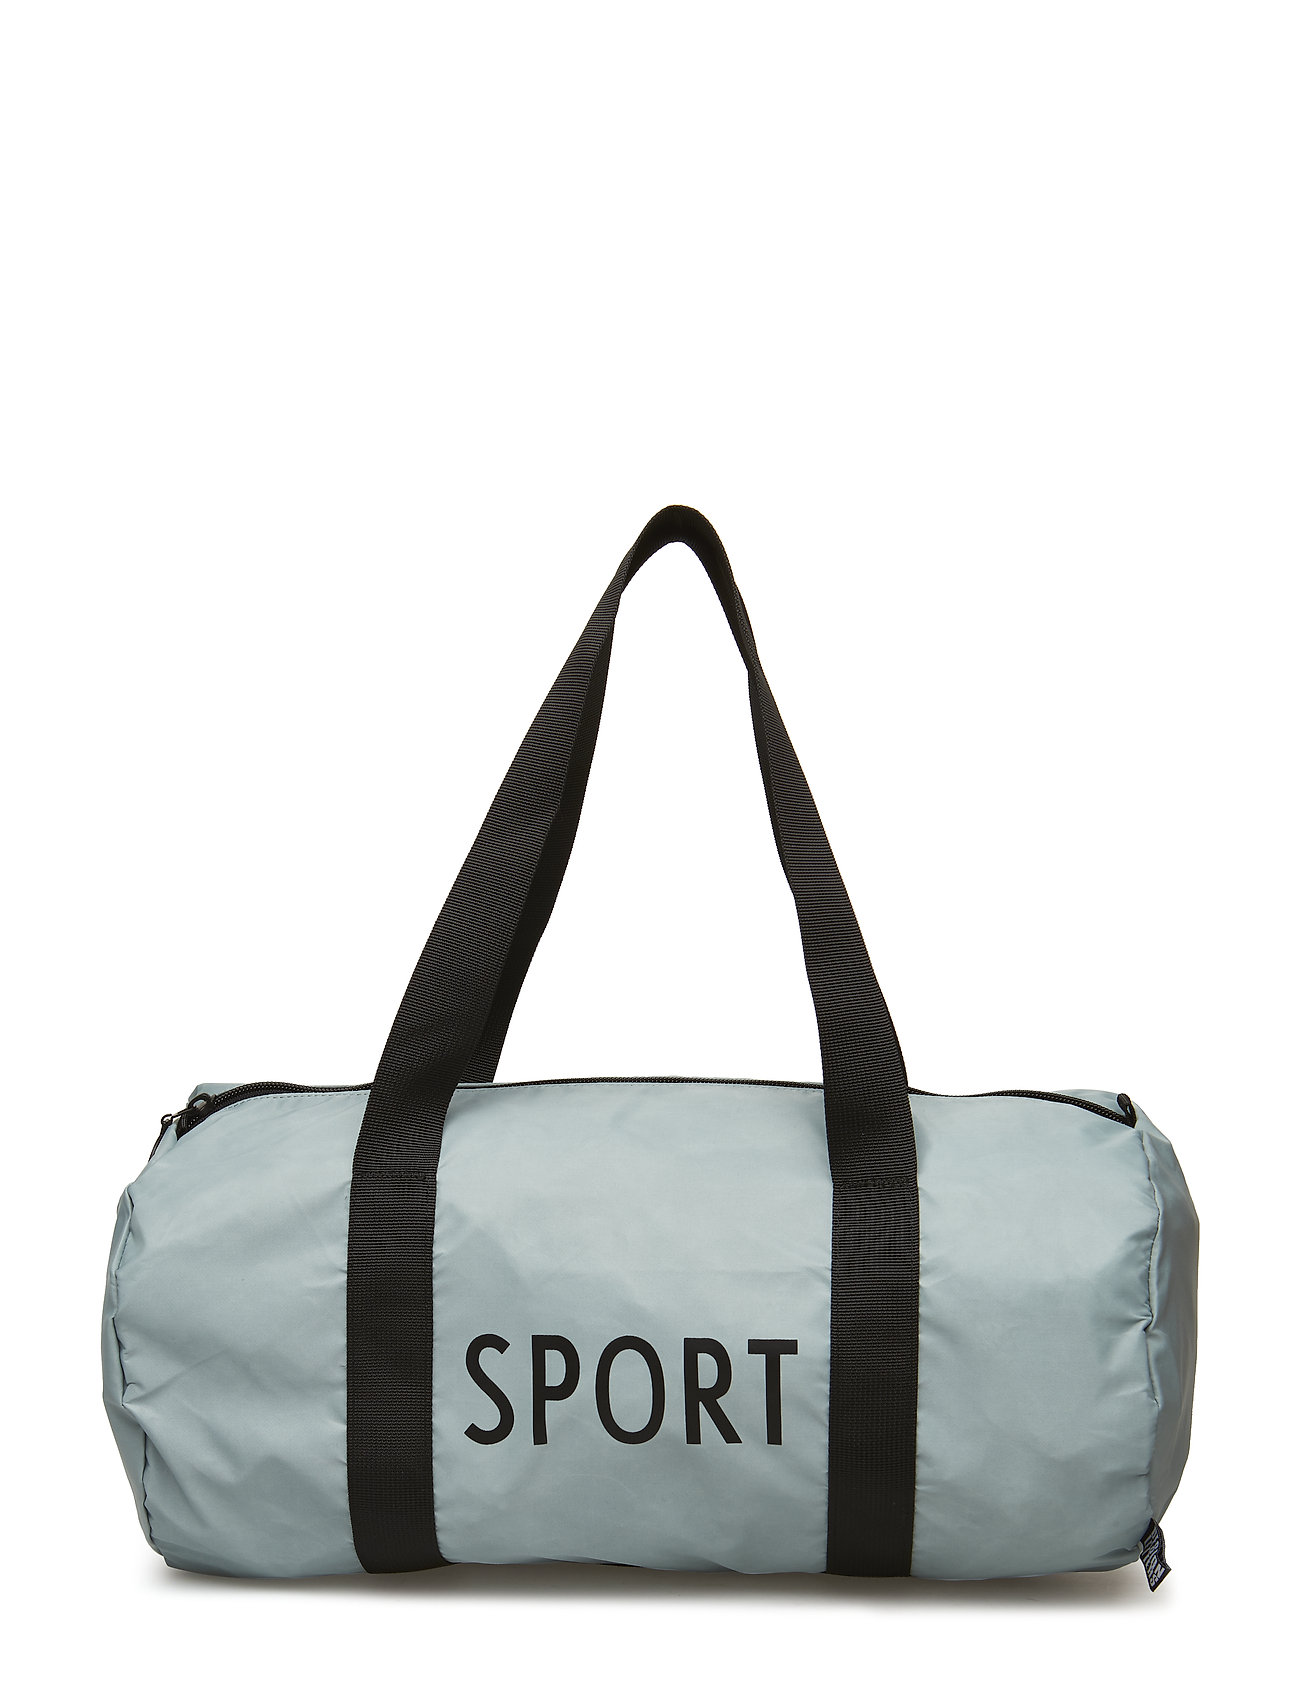 Sports Bag Small Weekendbag Taske Grøn Design Letters